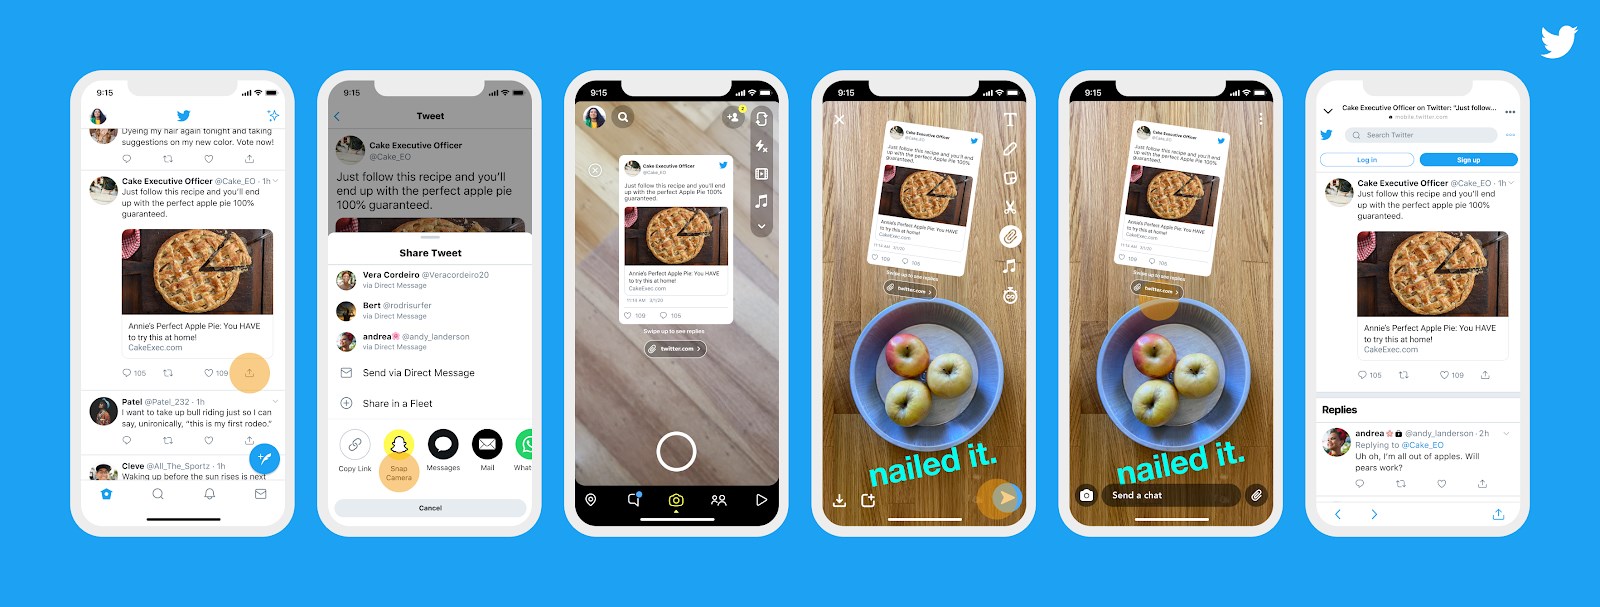 Instagram ve Snapchat'te tweet paylaşma dönemi başlıyor